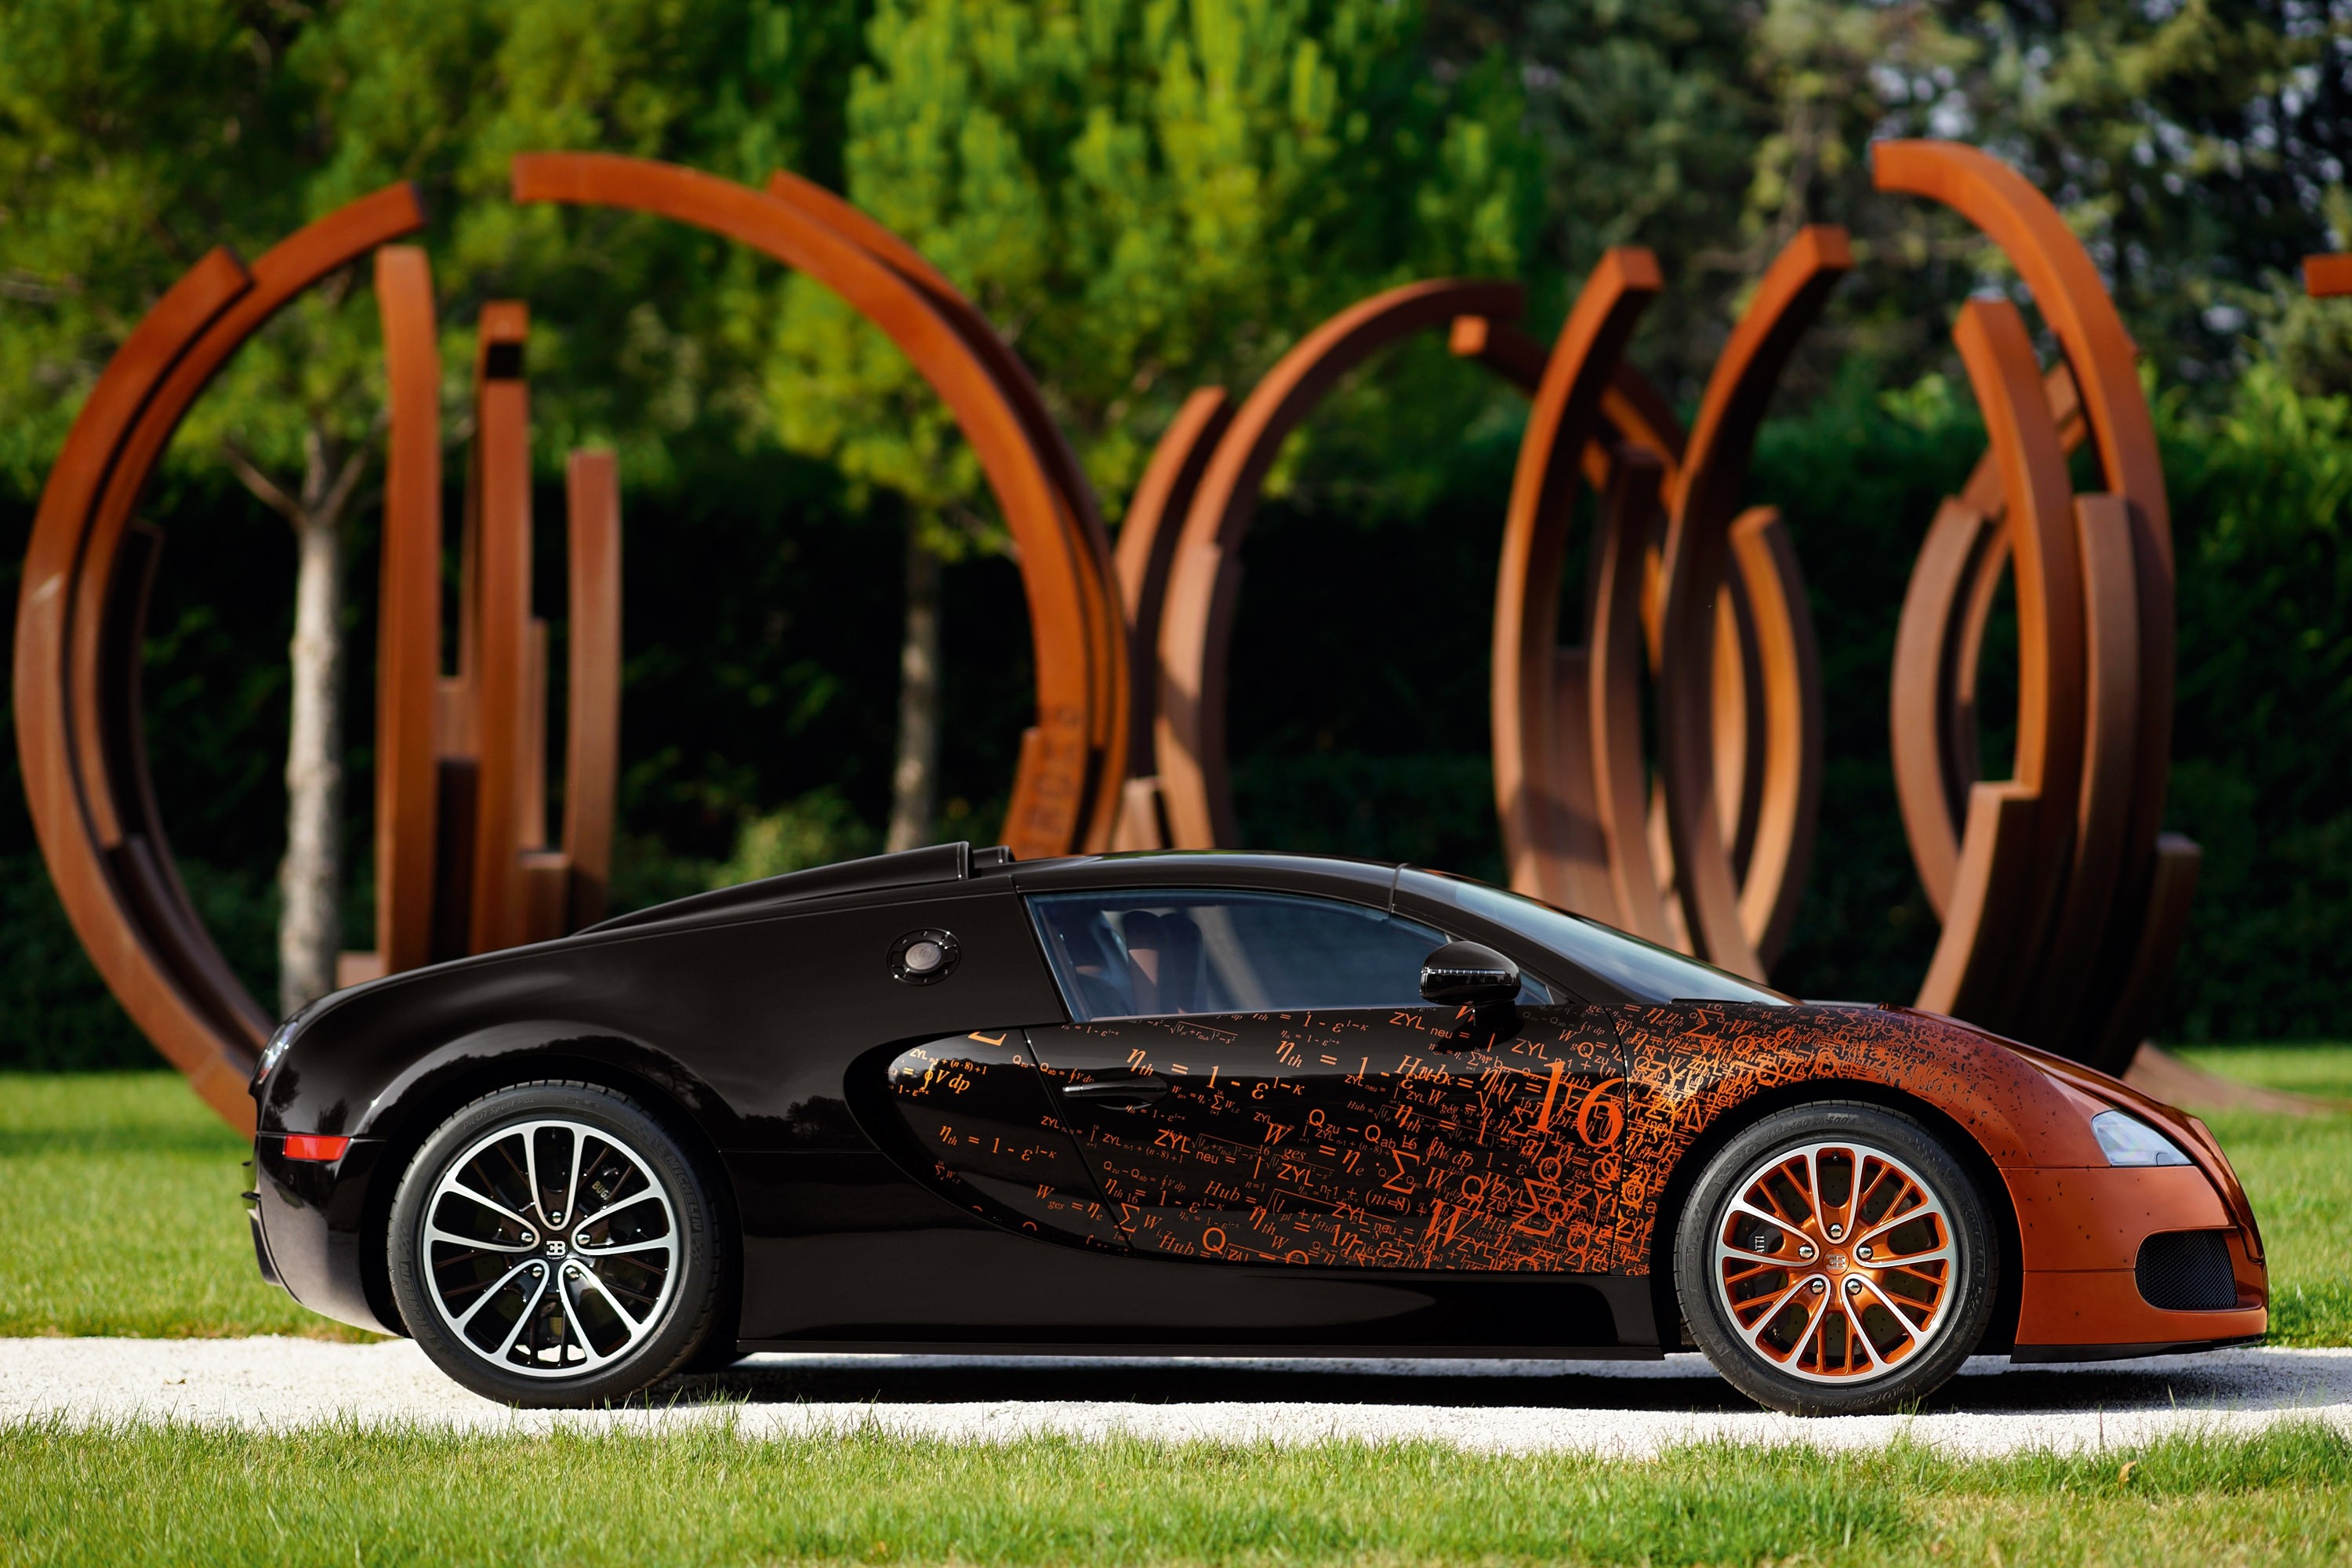 Популярные заставки и фоны Bugatti Veyron на компьютер